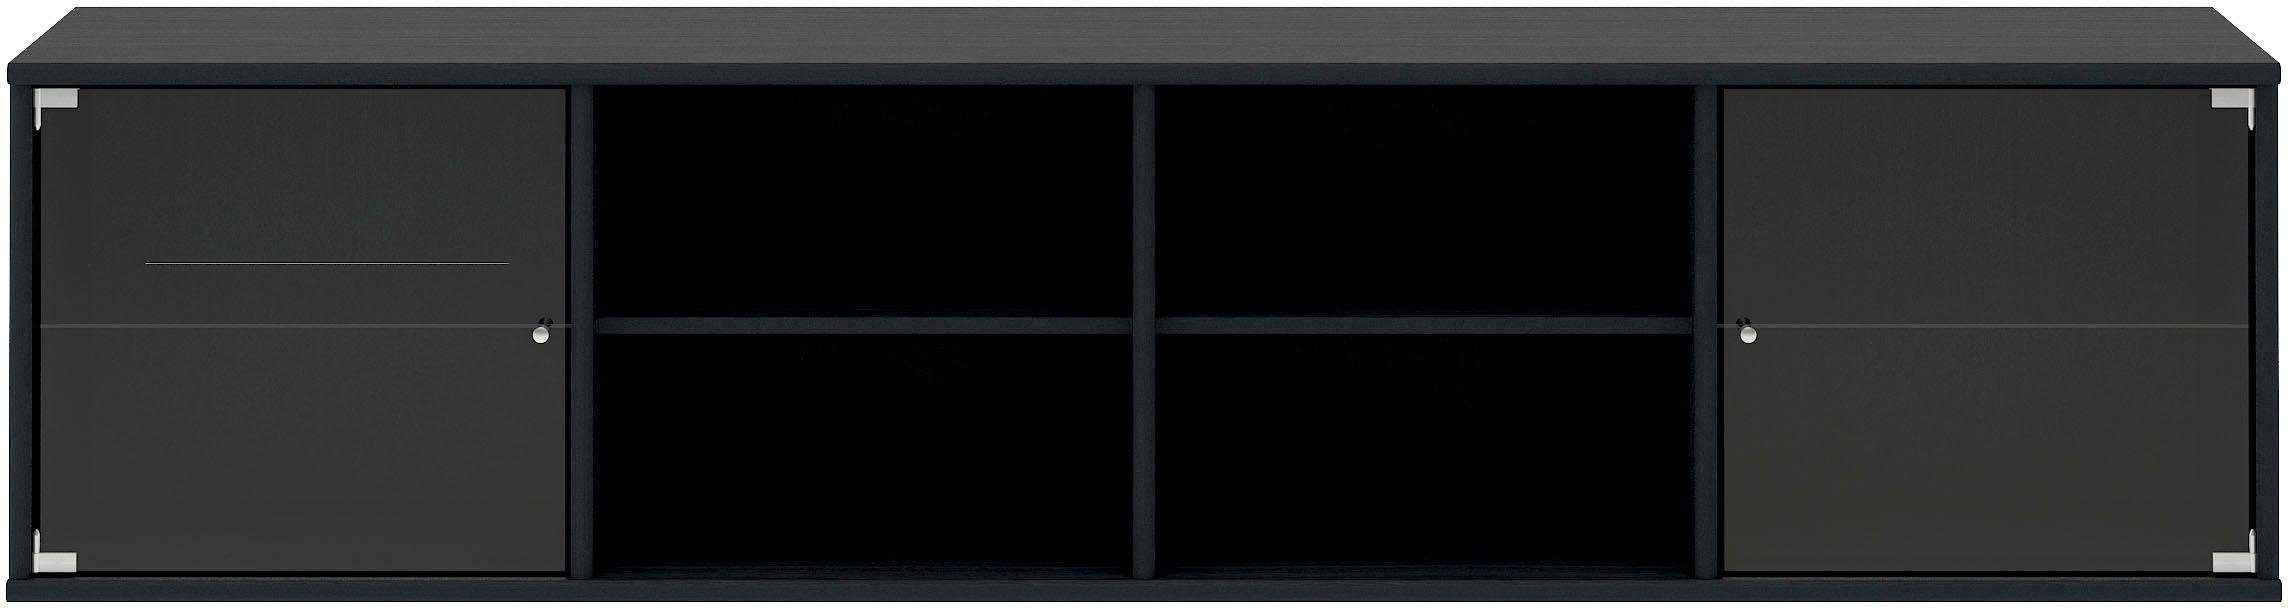 Hammel Furniture Regal Mistral, Hochwertig Lowboard, hängend/stehend montierbar, mit zwei Glastüren, B: 177 cm, lowboard, anpassungsbar Designmöbel schwarz gebeizt